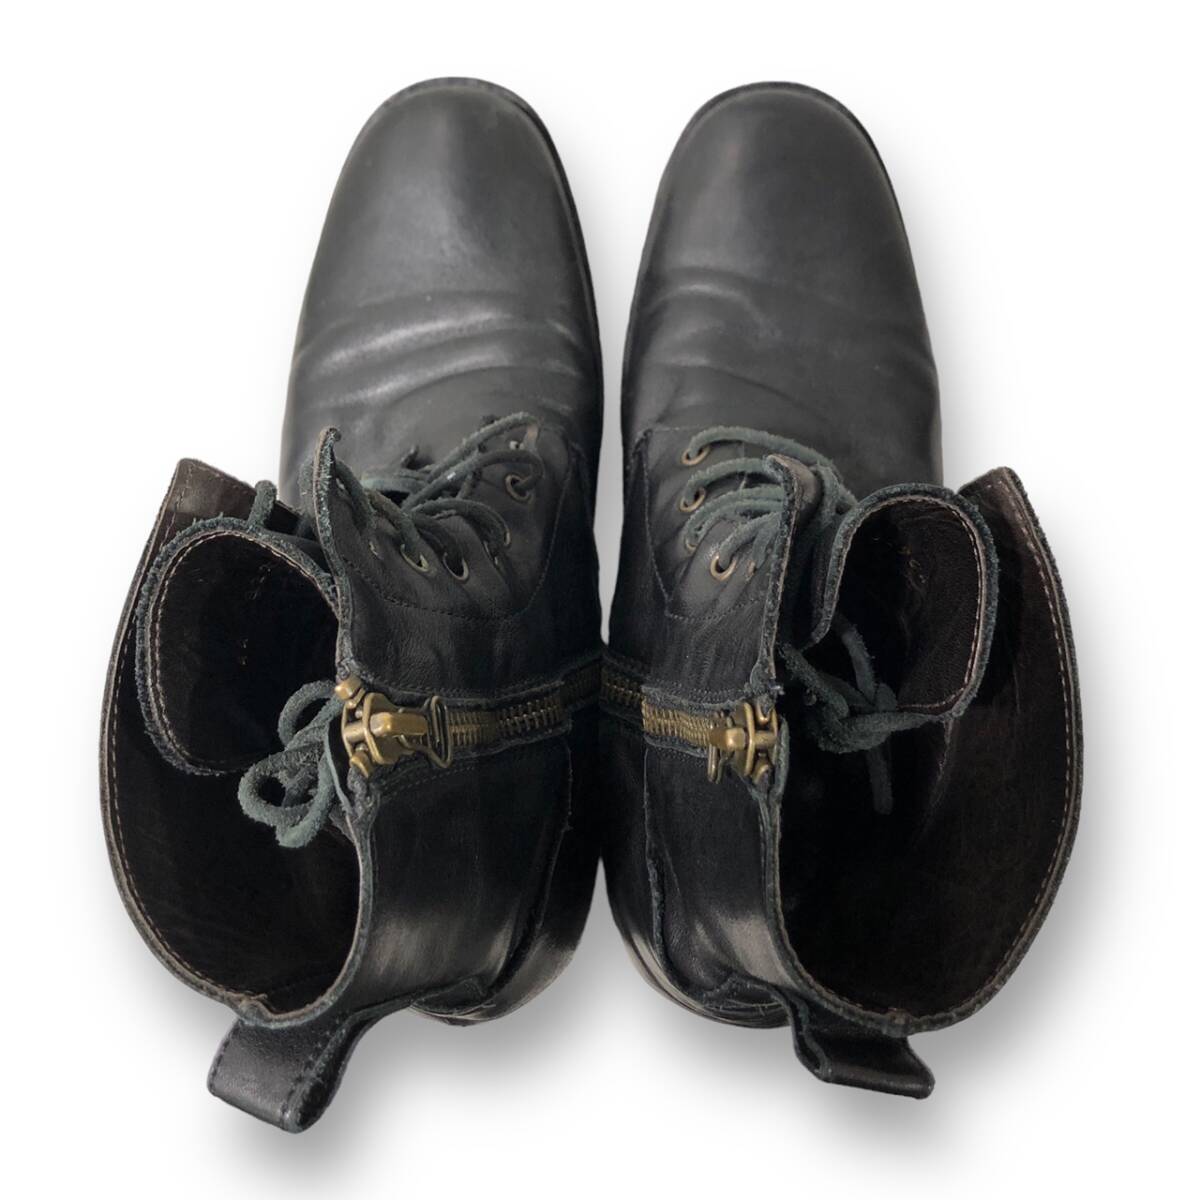 BUTTERO leather Boots レザーサイドジップブーツ サイズ44 ブッテロ 店舗受取可_画像6